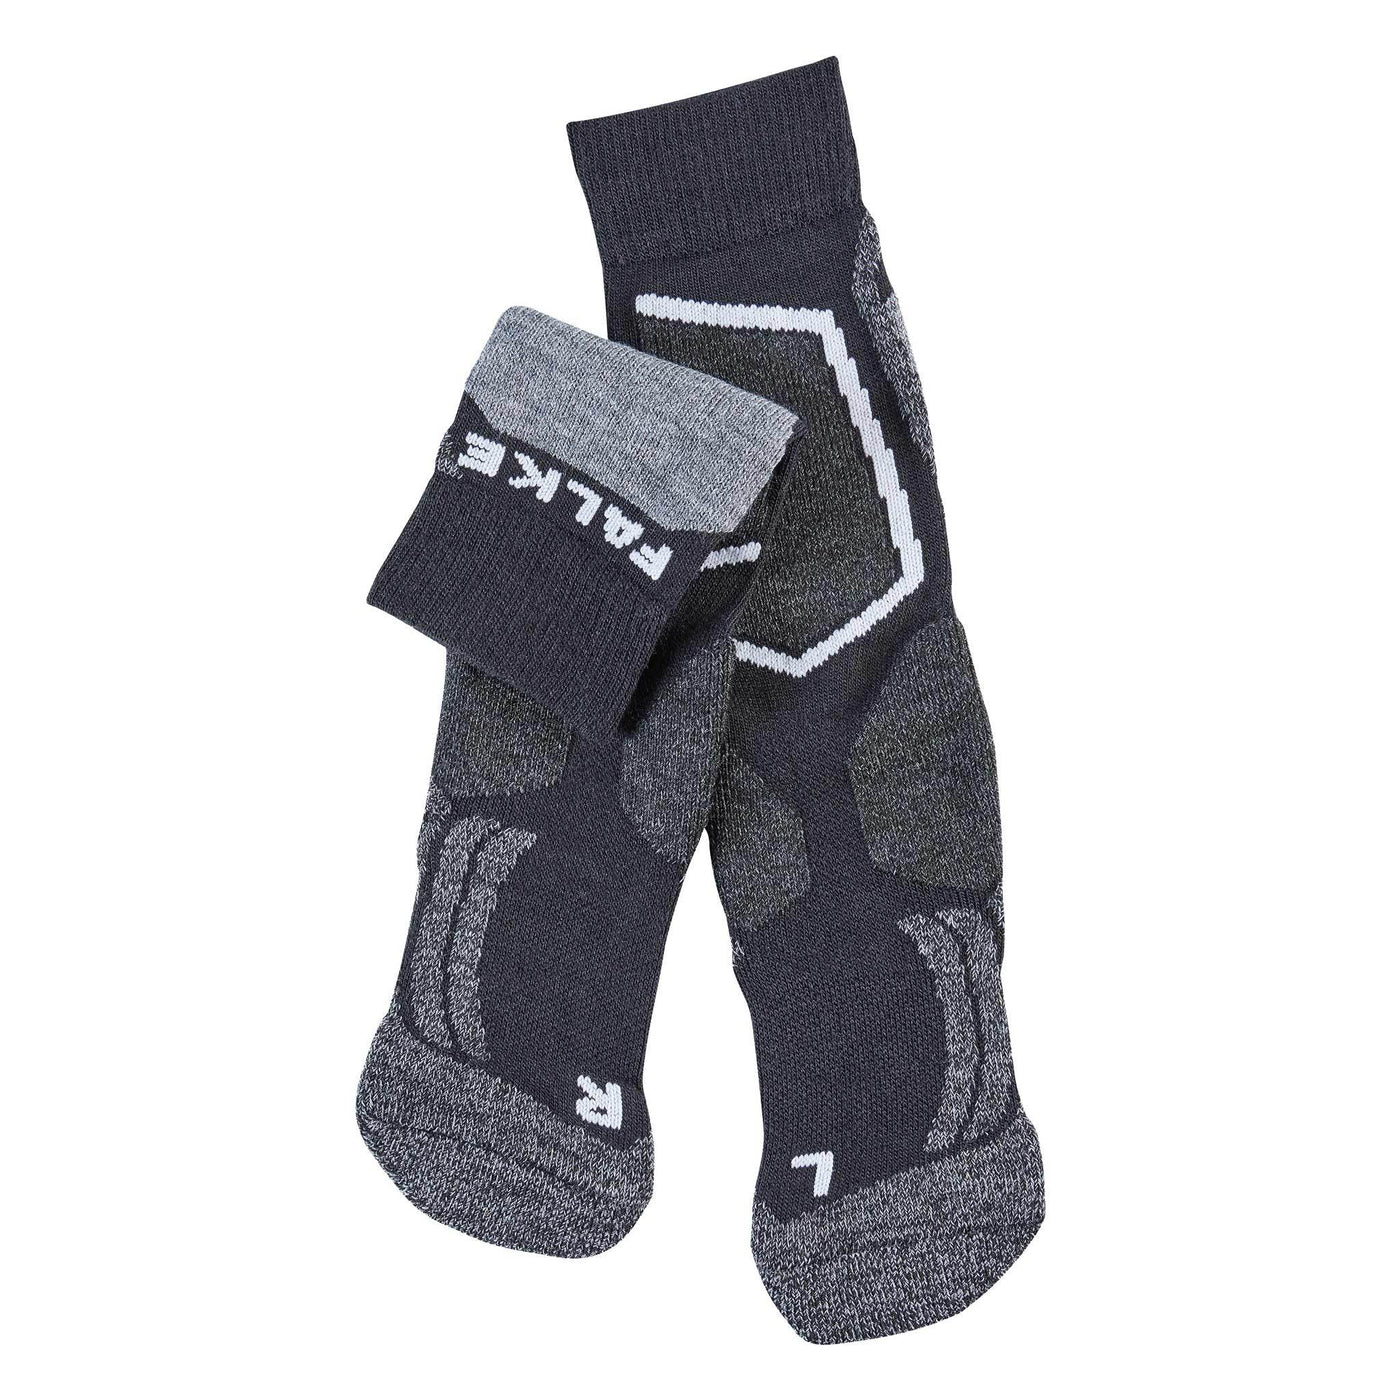 SnowKids Socks EU 23-26 (UK 5C-8.5C) Falke Strick SK2 Ski Sock - Black